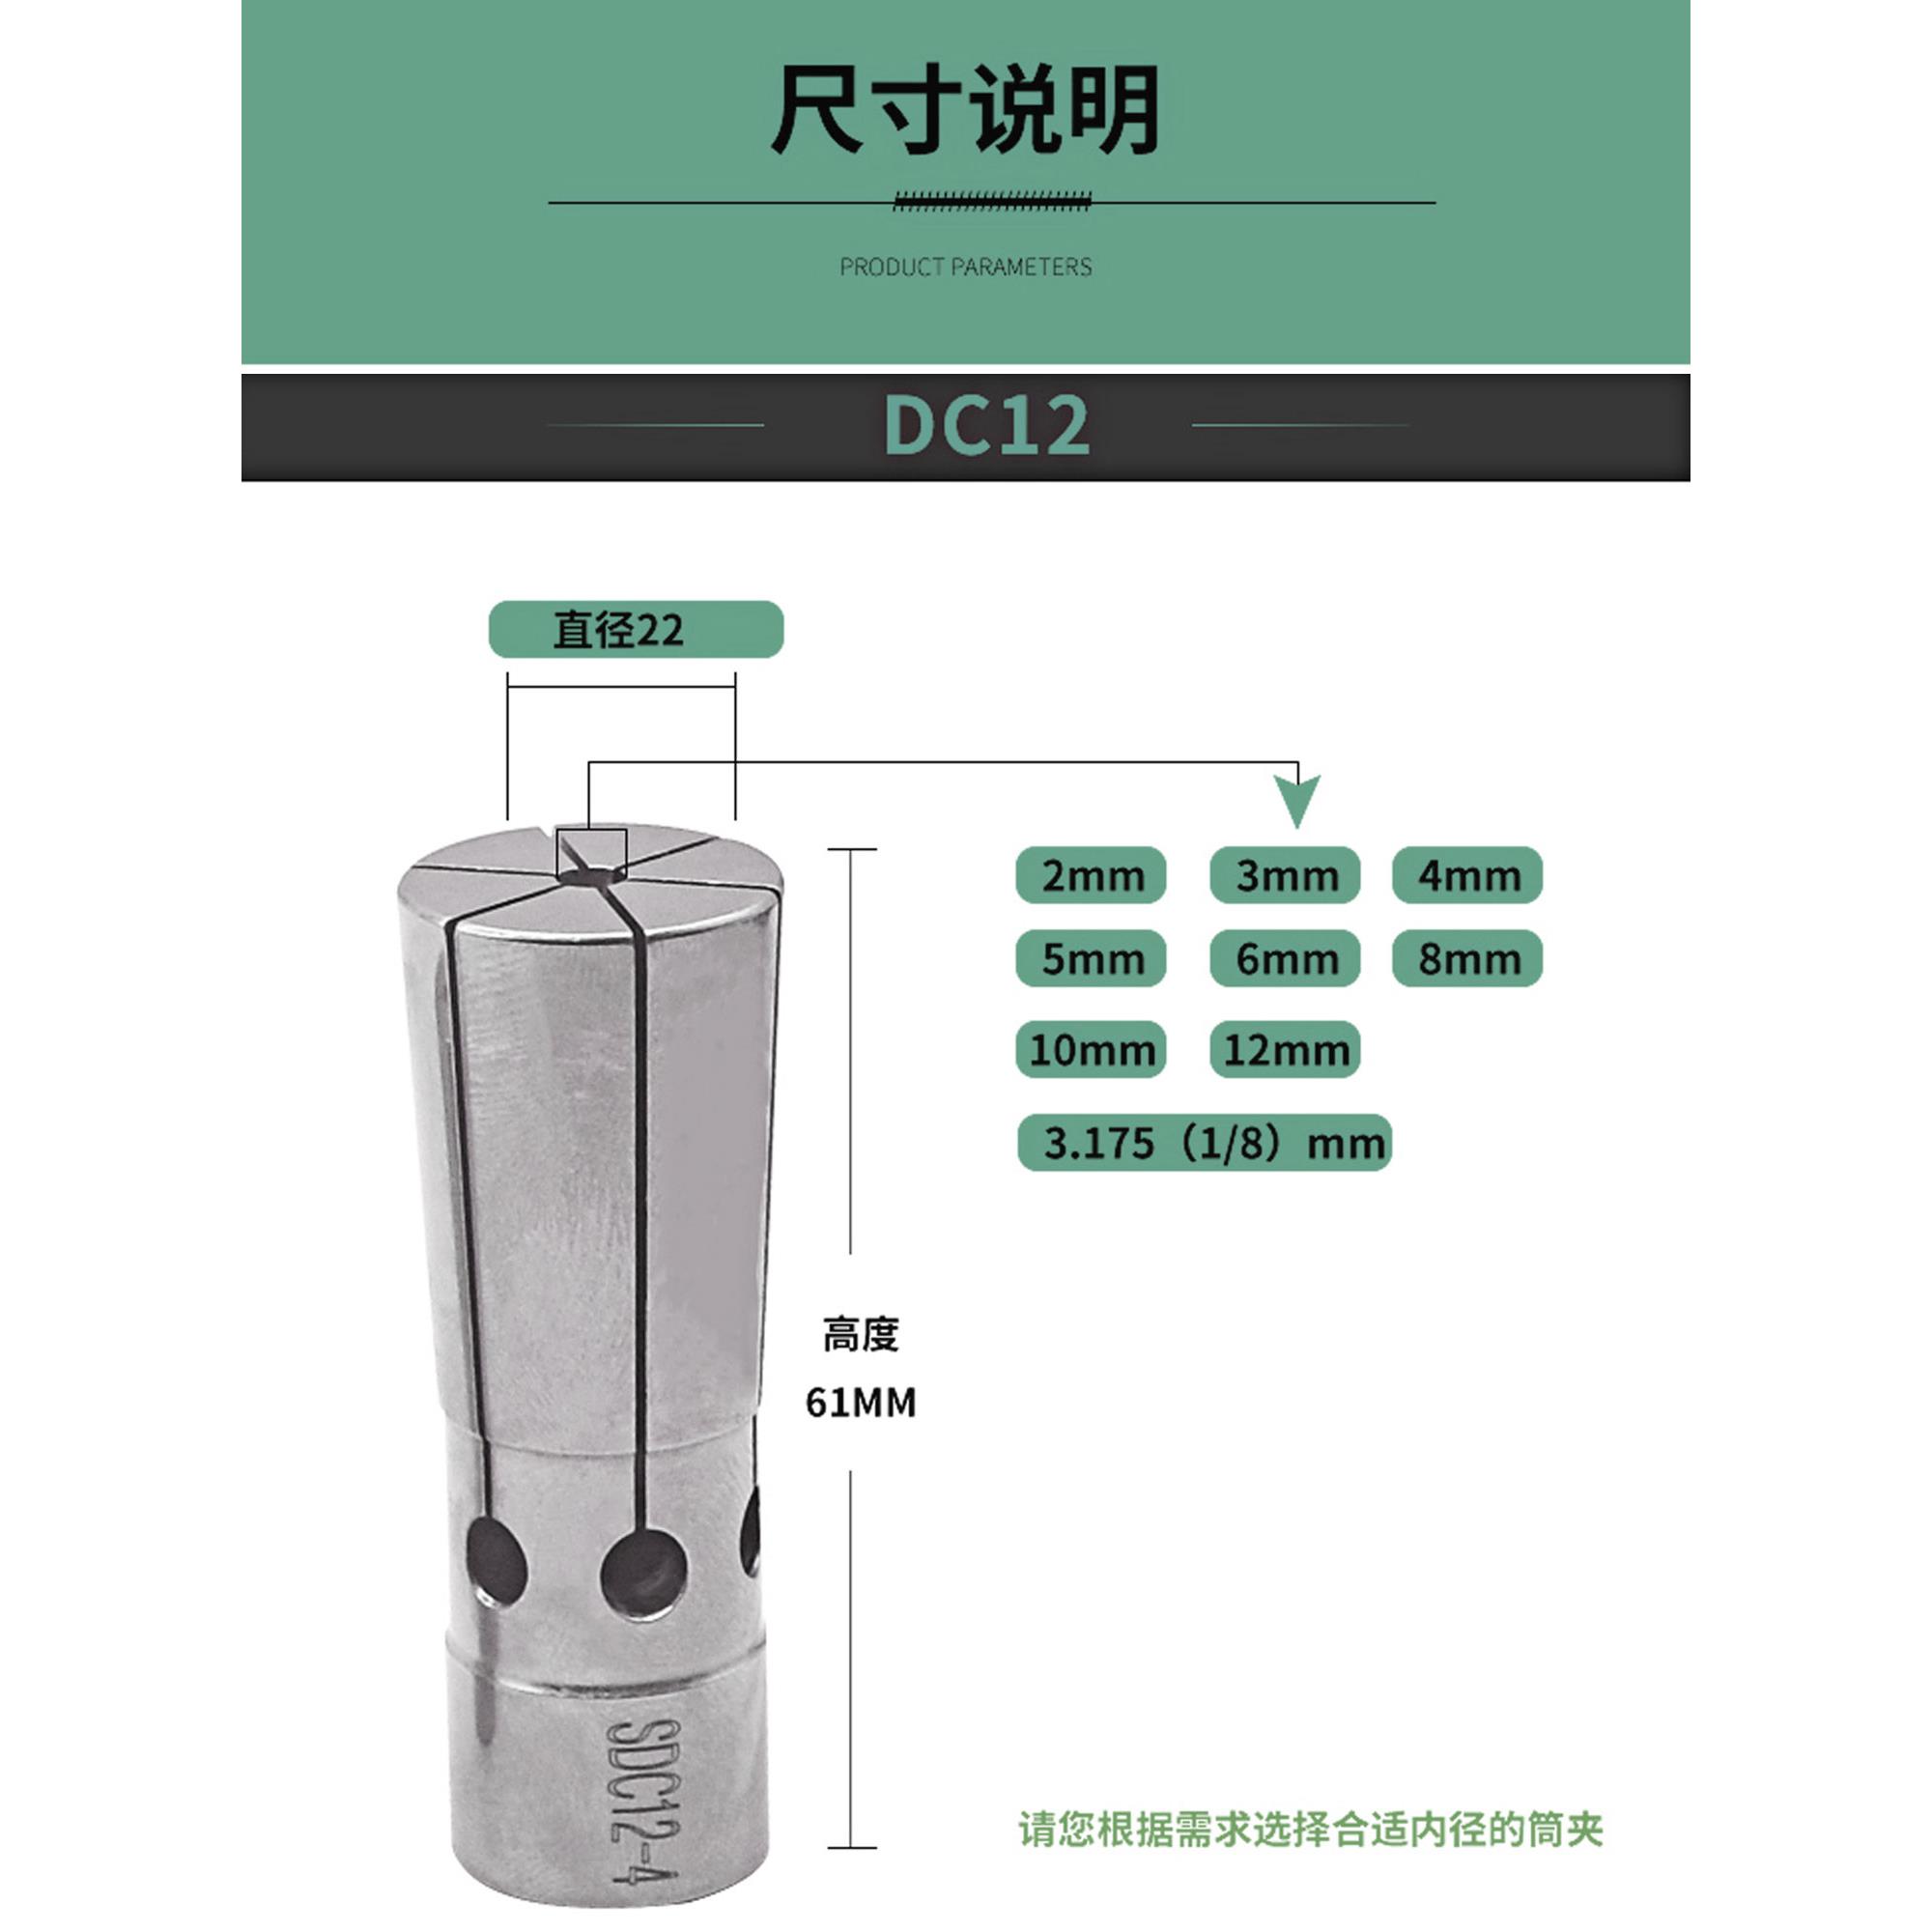 后拉式筒夹 DC04 DC06 DC08 DC12后拉夹头 弹簧夹头 台湾高精锁嘴 - 图2